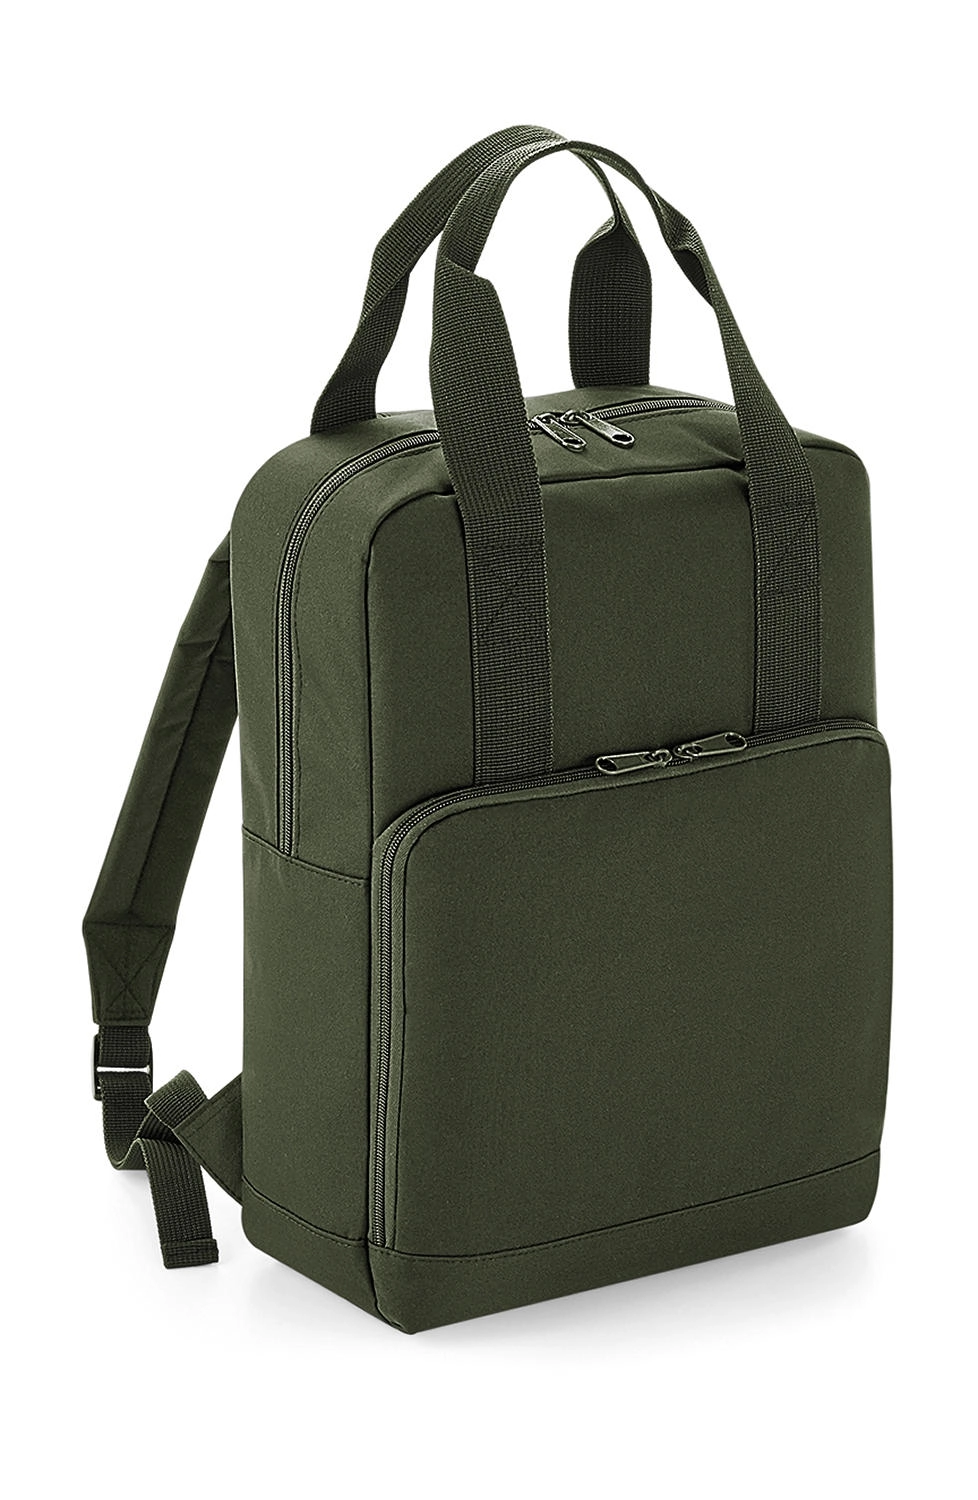 Twin Handle Backpack zum Besticken und Bedrucken in der Farbe Olive Green mit Ihren Logo, Schriftzug oder Motiv.